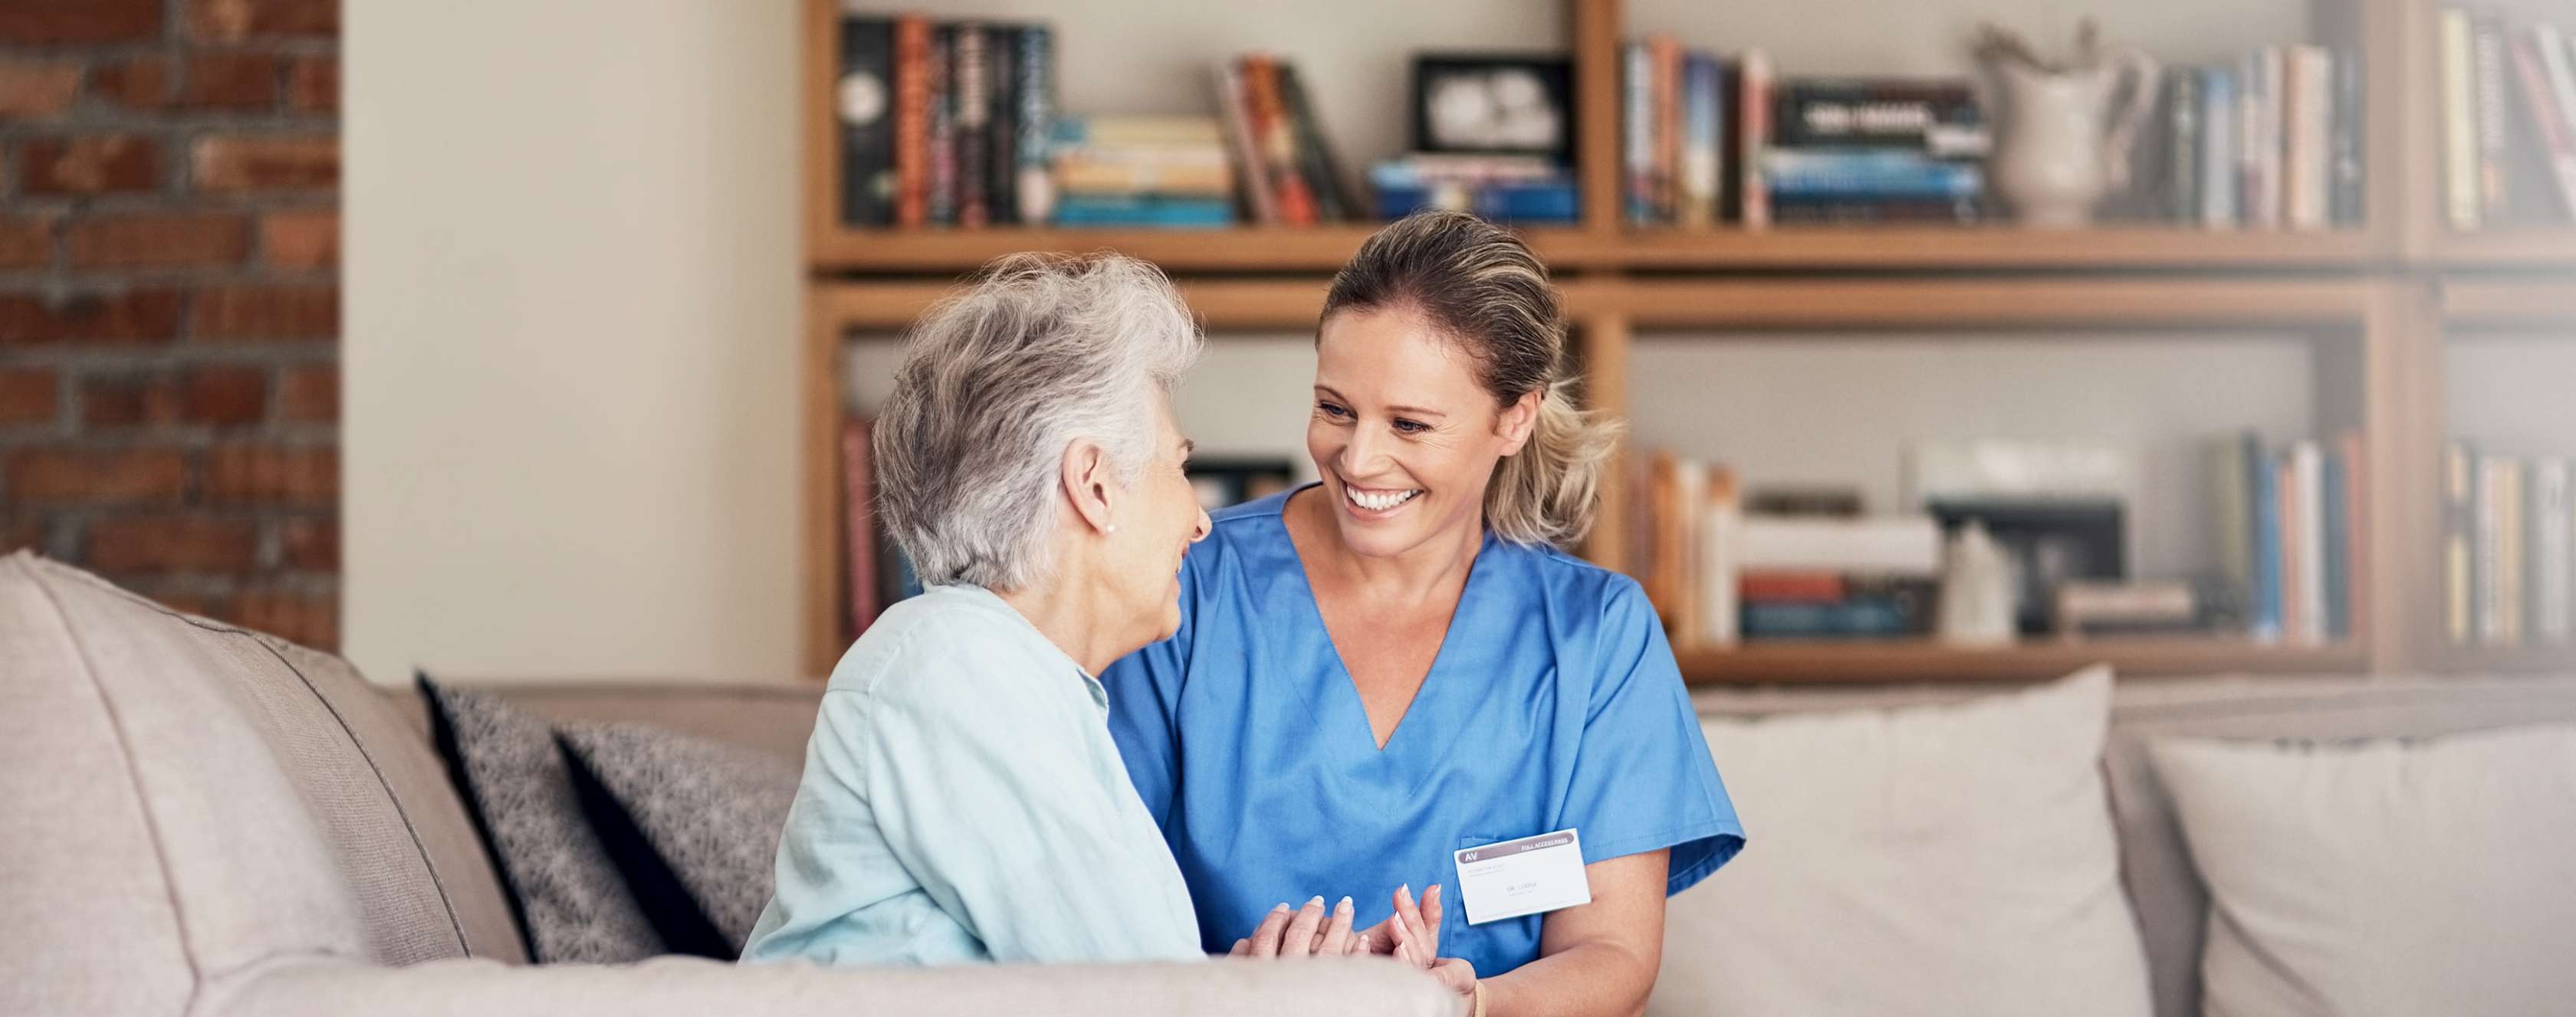 Pflegerin und ältere Frau lachen zusammen